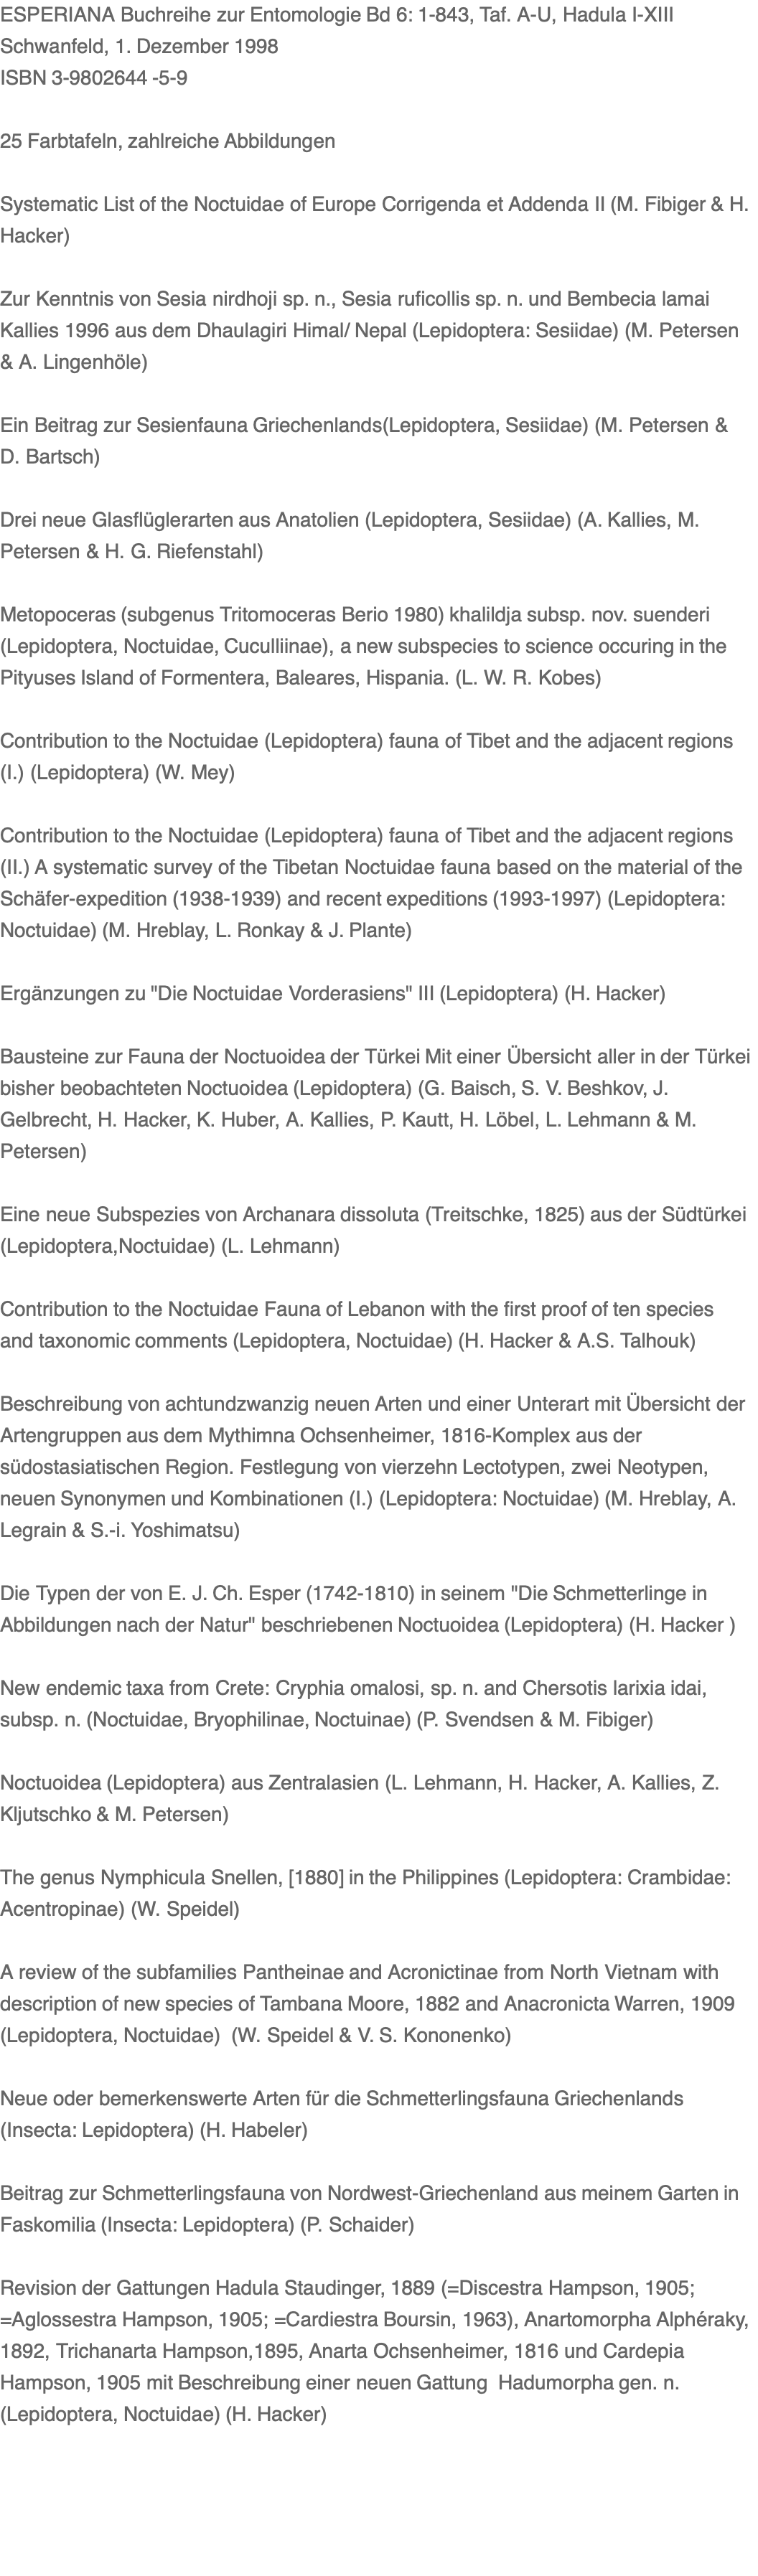 ESPERIANA Buchreihe zur Entomologie Bd 6: 1-843, Taf. A-U, Hadula I-XIII Schwanfeld, 1. Dezember 1998 ISBN 3-9802644 -5-9  25 Farbtafeln, zahlreiche Abbildungen  Systematic List of the Noctuidae of Europe Corrigenda et Addenda II (M. Fibiger & H. Hacker)  Zur Kenntnis von Sesia nirdhoji sp. n., Sesia ruficollis sp. n. und Bembecia lamai Kallies 1996 aus dem Dhaulagiri Himal/ Nepal (Lepidoptera: Sesiidae) (M. Petersen & A. Lingenhöle)    Ein Beitrag zur Sesienfauna Griechenlands(Lepidoptera, Sesiidae) (M. Petersen & D. Bartsch)   Drei neue Glasflüglerarten aus Anatolien (Lepidoptera, Sesiidae) (A. Kallies, M. Petersen & H. G. Riefenstahl)    Metopoceras (subgenus Tritomoceras Berio 1980) khalildja subsp. nov. suenderi (Lepidoptera, Noctuidae, Cuculliinae), a new subspecies to science occuring in the Pityuses Island of Formentera, Baleares, Hispania. (L. W. R. Kobes)   Contribution to the Noctuidae (Lepidoptera) fauna of Tibet and the adjacent regions (I.) (Lepidoptera) (W. Mey)   Contribution to the Noctuidae (Lepidoptera) fauna of Tibet and the adjacent regions (II.) A systematic survey of the Tibetan Noctuidae fauna based on the material of the Schäfer-expedition (1938-1939) and recent expeditions (1993-1997) (Lepidoptera: Noctuidae) (M. Hreblay, L. Ronkay & J. Plante)   Ergänzungen zu "Die Noctuidae Vorderasiens" III (Lepidoptera) (H. Hacker)   Bausteine zur Fauna der Noctuoidea der Türkei Mit einer Übersicht aller in der Türkei bisher beobachteten Noctuoidea (Lepidoptera) (G. Baisch, S. V. Beshkov, J. Gelbrecht, H. Hacker, K. Huber, A. Kallies, P. Kautt, H. Löbel, L. Lehmann & M. Petersen)   Eine neue Subspezies von Archanara dissoluta (Treitschke, 1825) aus der Südtürkei (Lepidoptera,Noctuidae) (L. Lehmann)   Contribution to the Noctuidae Fauna of Lebanon with the first proof of ten species and taxonomic comments (Lepidoptera, Noctuidae) (H. Hacker & A.S. Talhouk)   Beschreibung von achtundzwanzig neuen Arten und einer Unterart mit Übersicht der Artengruppen aus dem Mythimna Ochsenheimer, 1816-Komplex aus der südostasiatischen Region. Festlegung von vierzehn Lectotypen, zwei Neotypen, neuen Synonymen und Kombinationen (I.) (Lepidoptera: Noctuidae) (M. Hreblay, A. Legrain & S.-i. Yoshimatsu)   Die Typen der von E. J. Ch. Esper (1742-1810) in seinem "Die Schmetterlinge in Abbildungen nach der Natur" beschriebenen Noctuoidea (Lepidoptera) (H. Hacker )    New endemic taxa from Crete: Cryphia omalosi, sp. n. and Chersotis larixia idai, subsp. n. (Noctuidae, Bryophilinae, Noctuinae) (P. Svendsen & M. Fibiger)    Noctuoidea (Lepidoptera) aus Zentralasien (L. Lehmann, H. Hacker, A. Kallies, Z. Kljutschko & M. Petersen)   The genus Nymphicula Snellen, [1880] in the Philippines (Lepidoptera: Crambidae: Acentropinae) (W. Speidel)   A review of the subfamilies Pantheinae and Acronictinae from North Vietnam with description of new species of Tambana Moore, 1882 and Anacronicta Warren, 1909 (Lepidoptera, Noctuidae)  (W. Speidel & V. S. Kononenko)    Neue oder bemerkenswerte Arten für die Schmetterlingsfauna Griechenlands (Insecta: Lepidoptera) (H. Habeler)   Beitrag zur Schmetterlingsfauna von Nordwest-Griechenland aus meinem Garten in Faskomilia (Insecta: Lepidoptera) (P. Schaider)    Revision der Gattungen Hadula Staudinger, 1889 (=Discestra Hampson, 1905; =Aglossestra Hampson, 1905; =Cardiestra Boursin, 1963), Anartomorpha Alphéraky, 1892, Trichanarta Hampson,1895, Anarta Ochsenheimer, 1816 und Cardepia Hampson, 1905 mit Beschreibung einer neuen Gattung  Hadumorpha gen. n. (Lepidoptera, Noctuidae) (H. Hacker)